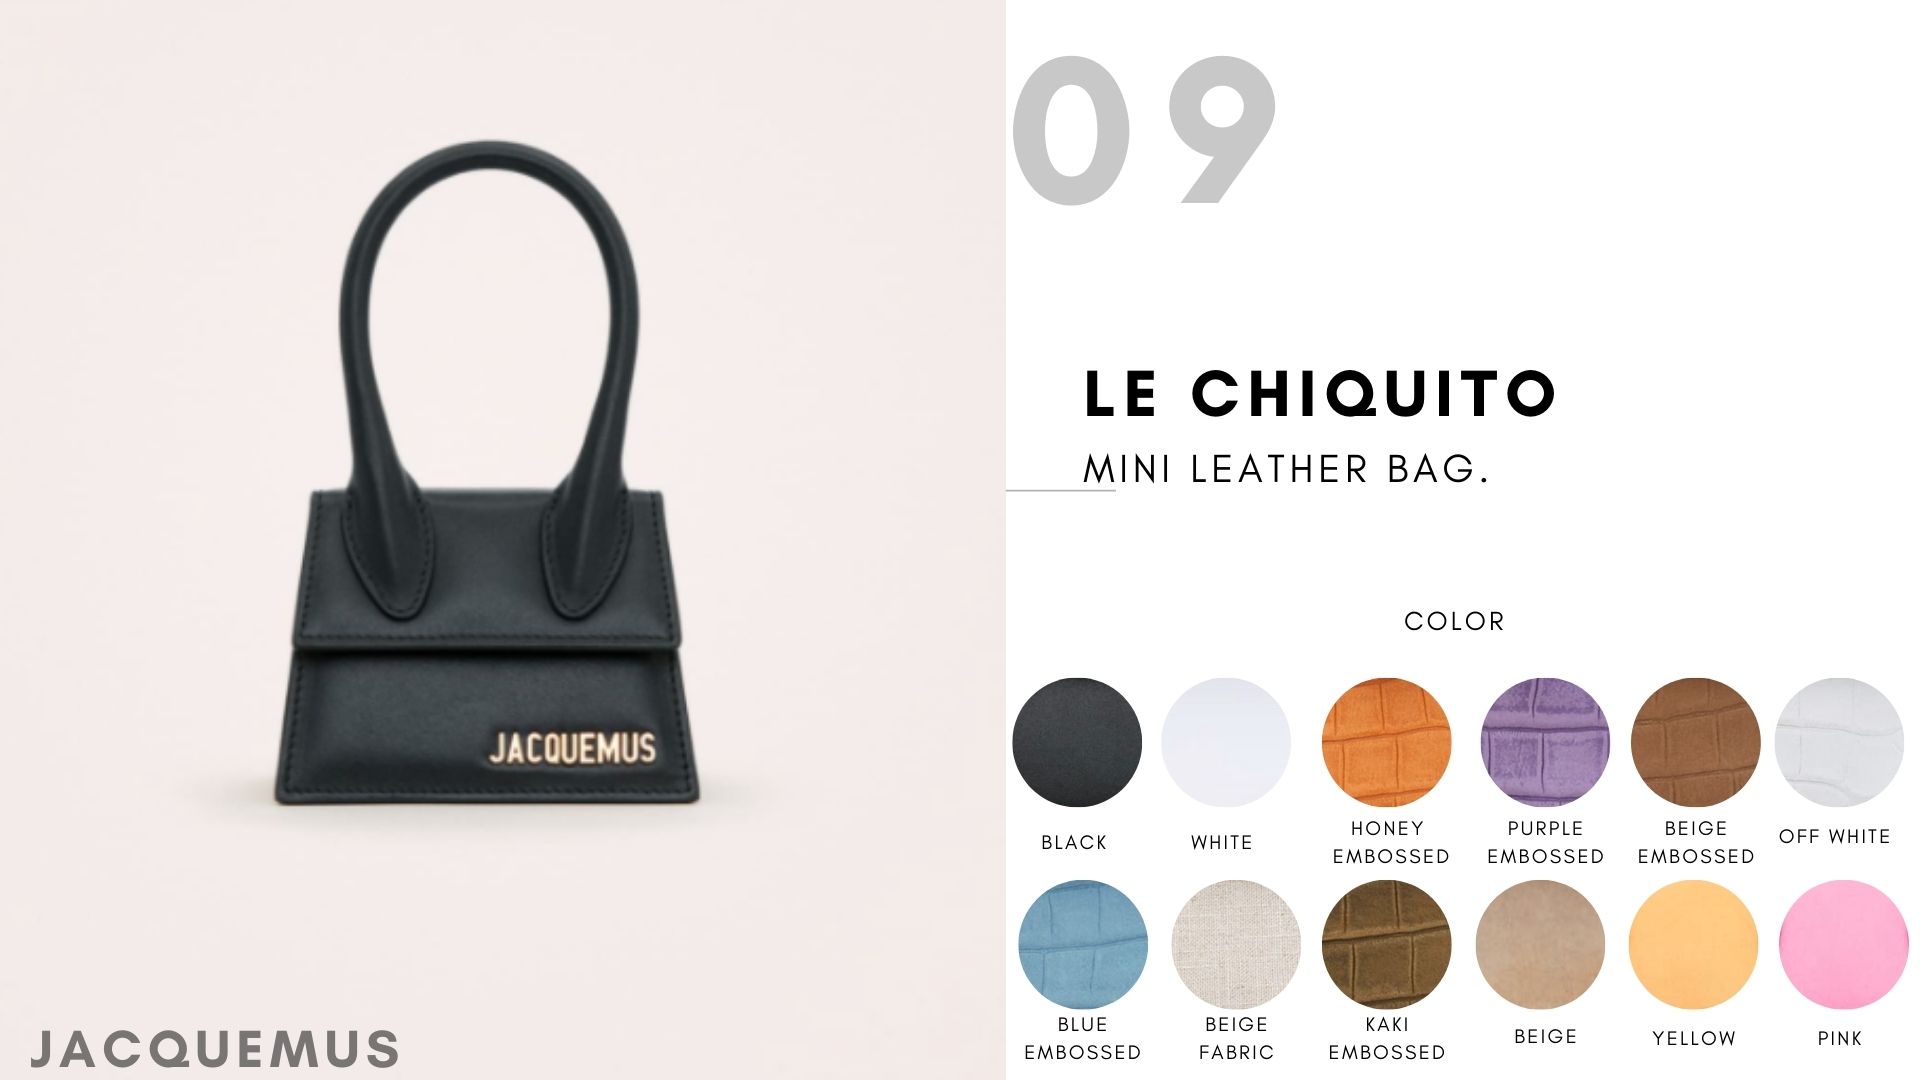 Le Chiquito Mini leather bag.